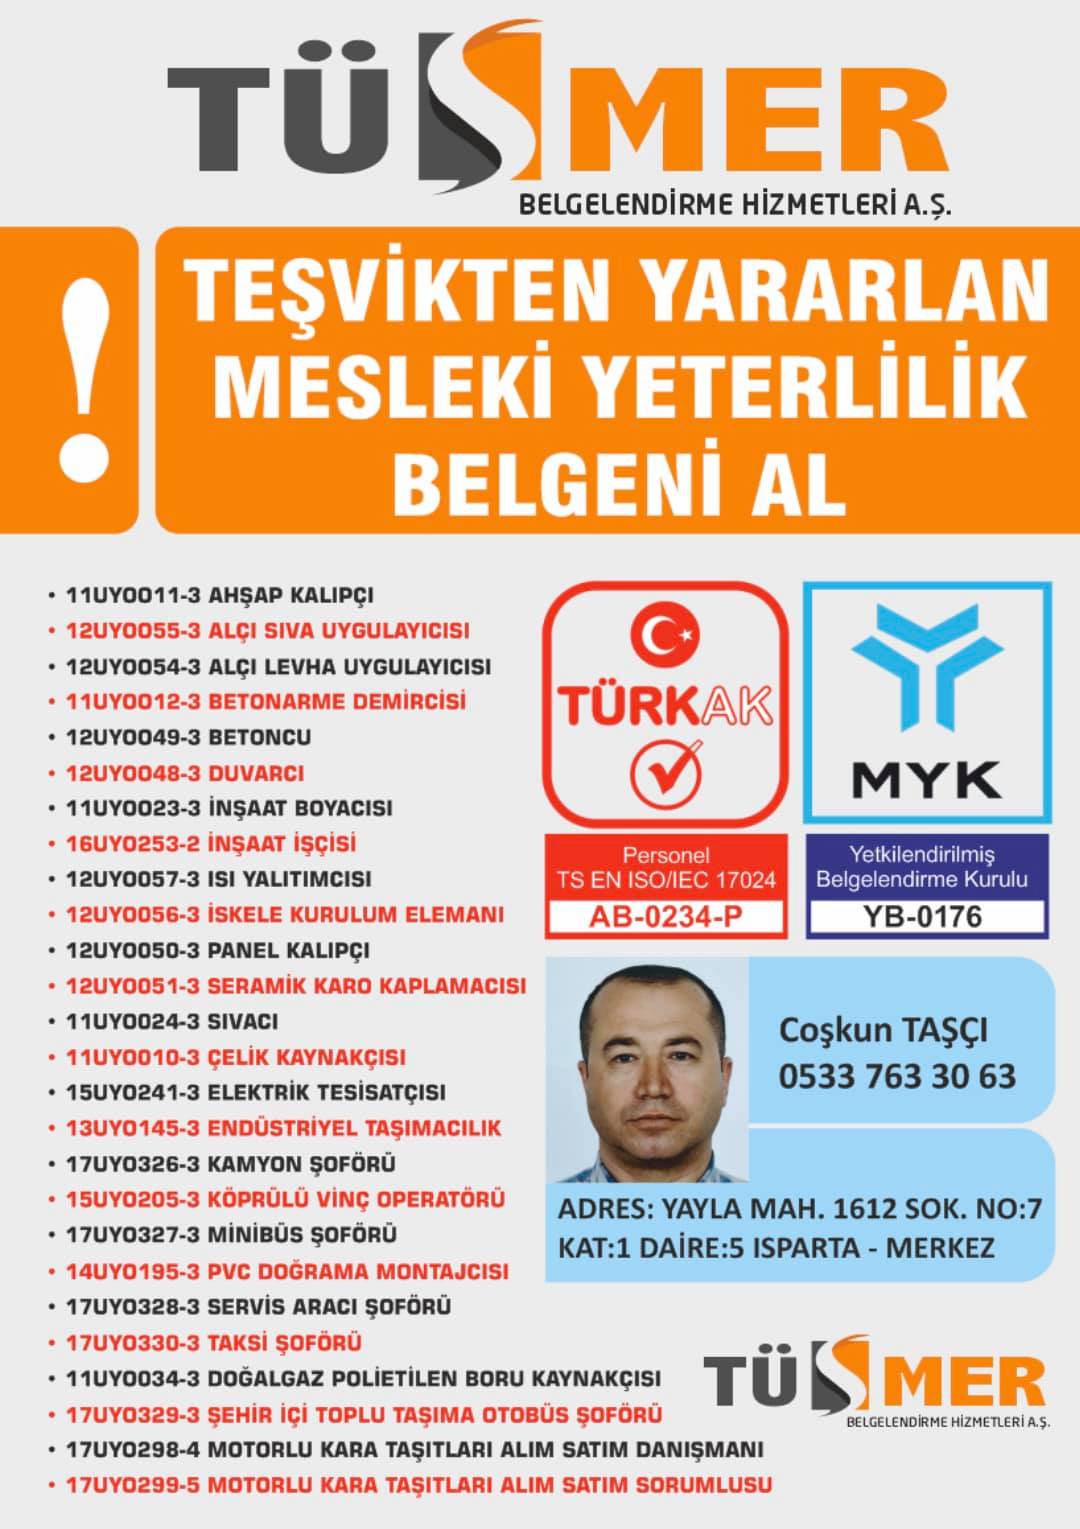 MYK MESLEKİ YETERLİLİK BELGESİ Erenköy Kadıköy İstanbul